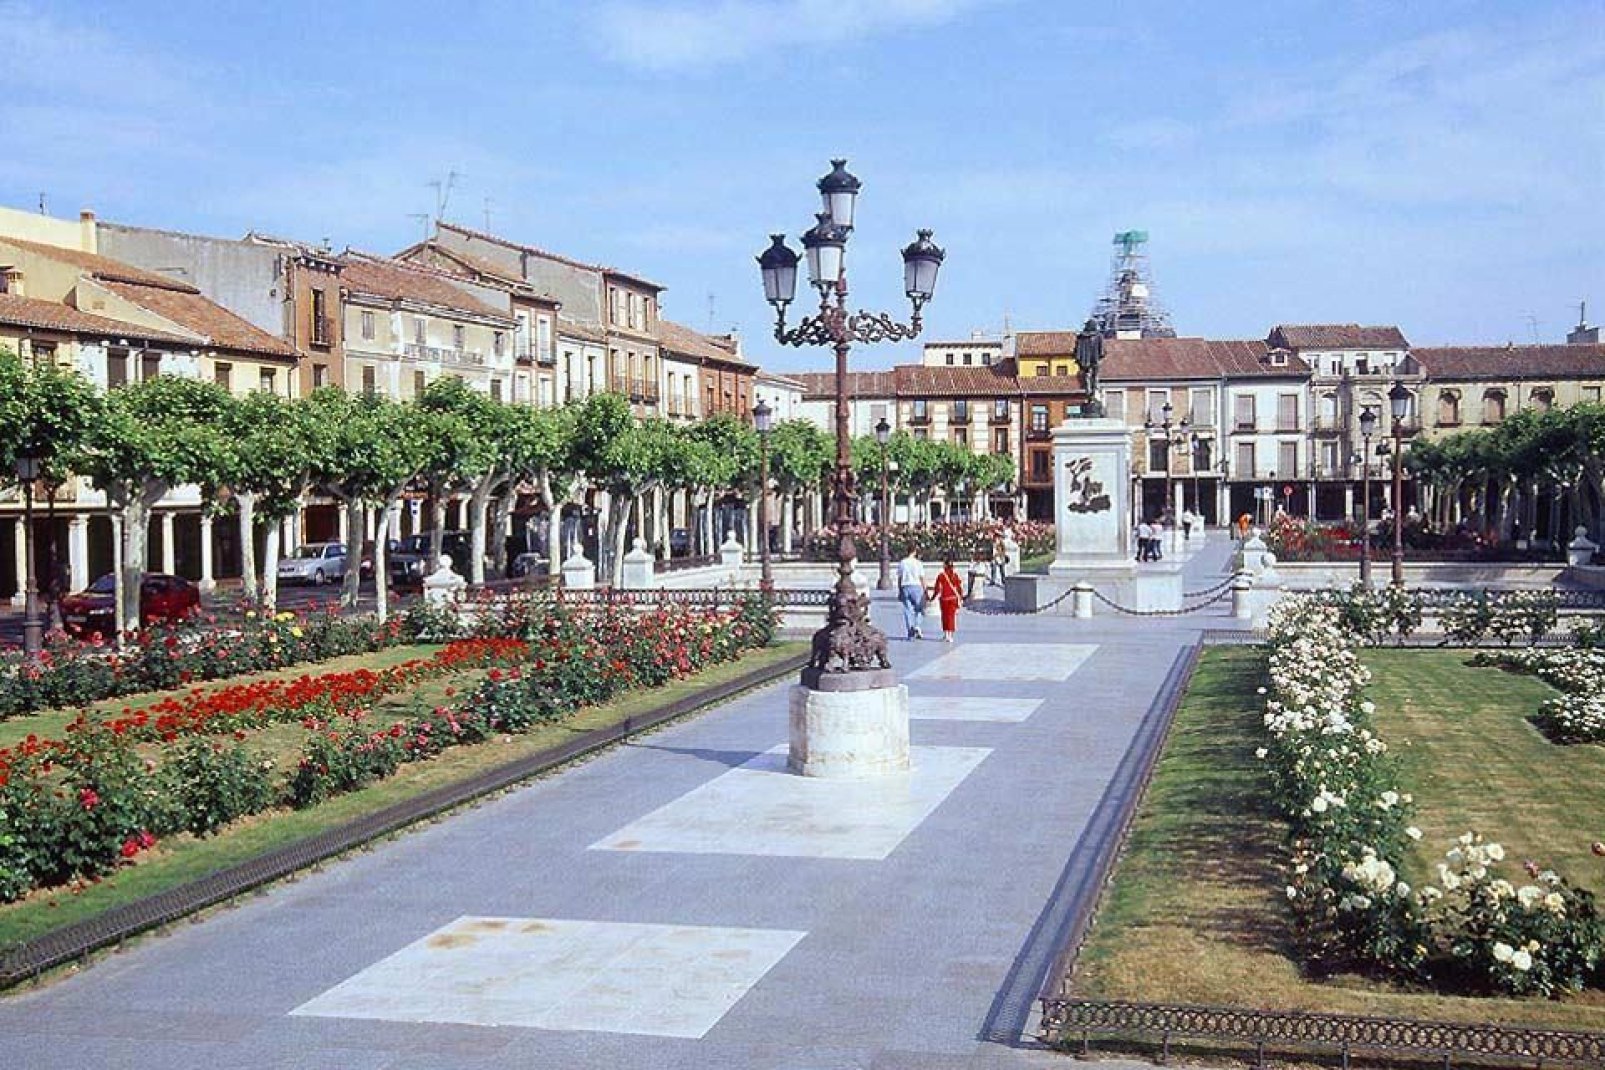 Cette place est le centre de la ville d'Alcala de Henares. Une statue de Don Quichotte y trône : l'auteur Miguel de Cervantes est en effet né dans cette ville.